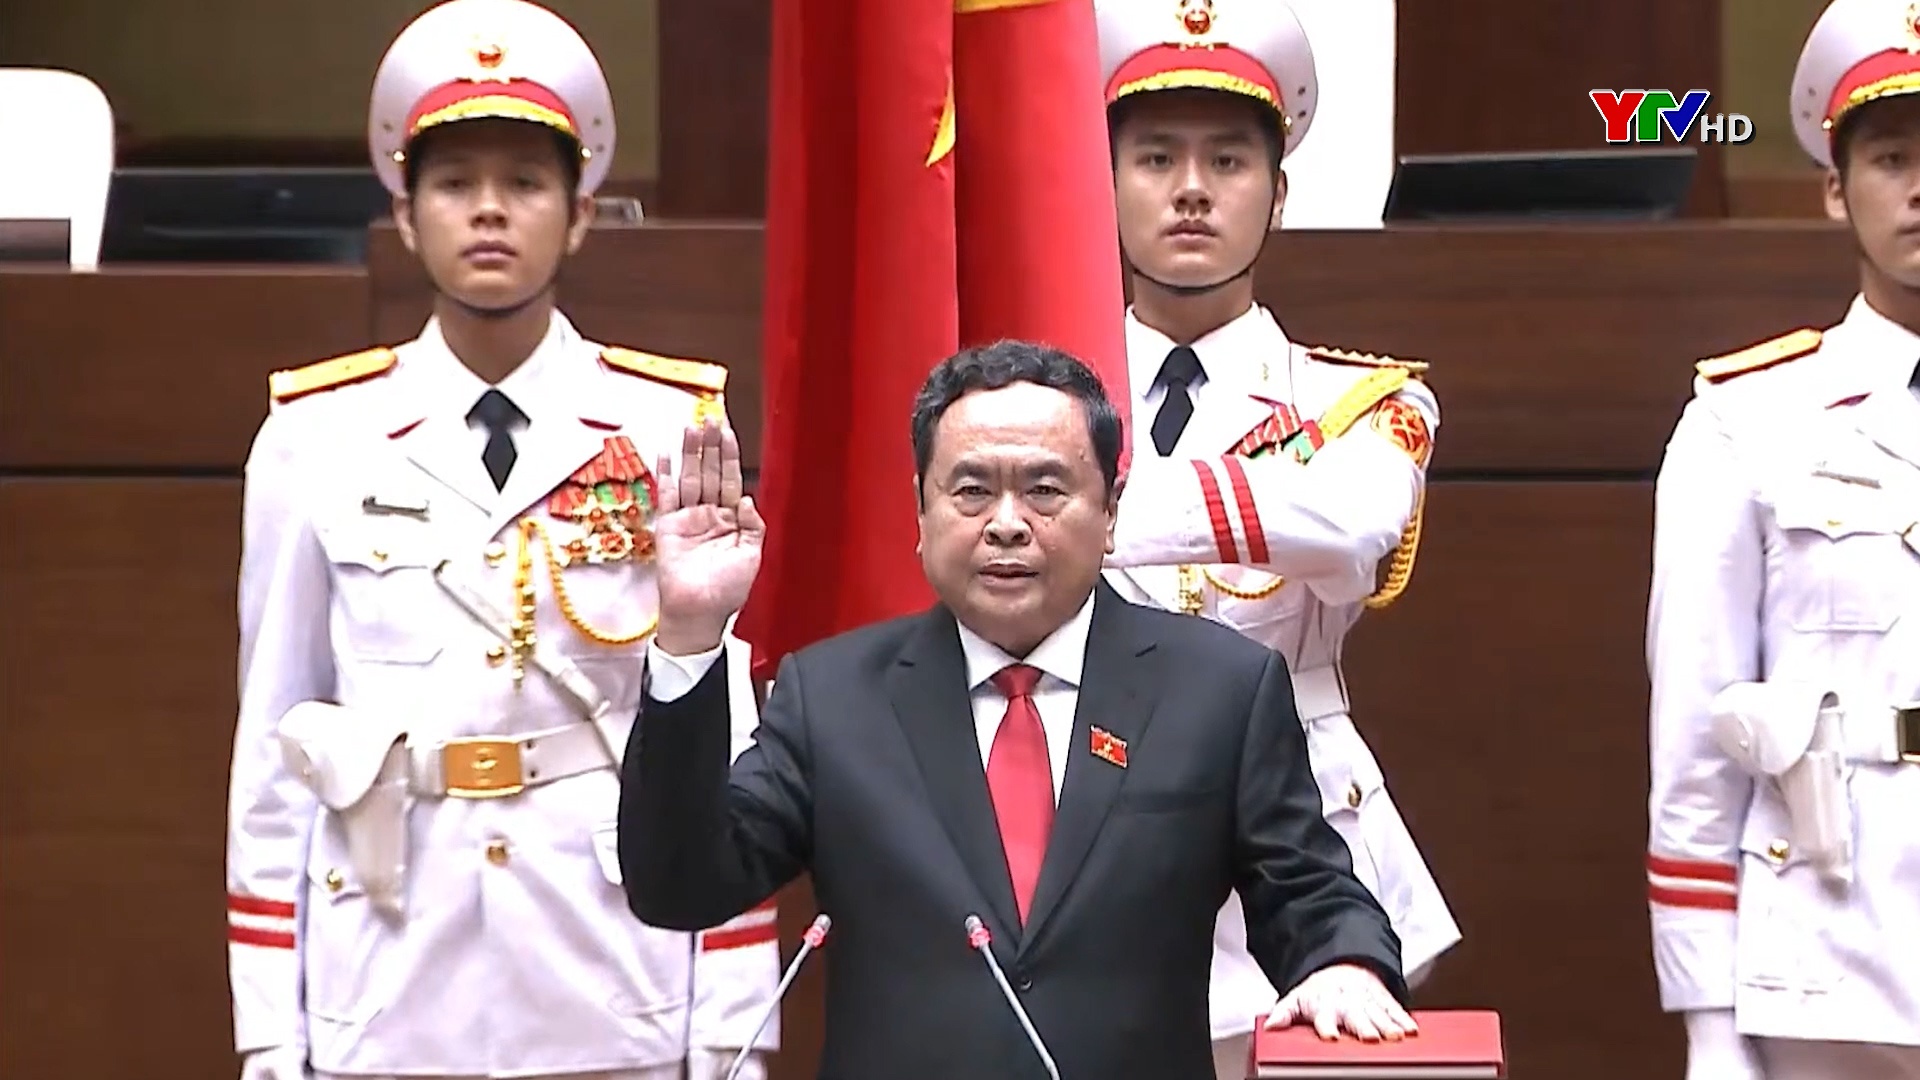 Đồng chí Trần Thanh Mẫn được bầu làm Chủ tịch Quốc hội khóa XV